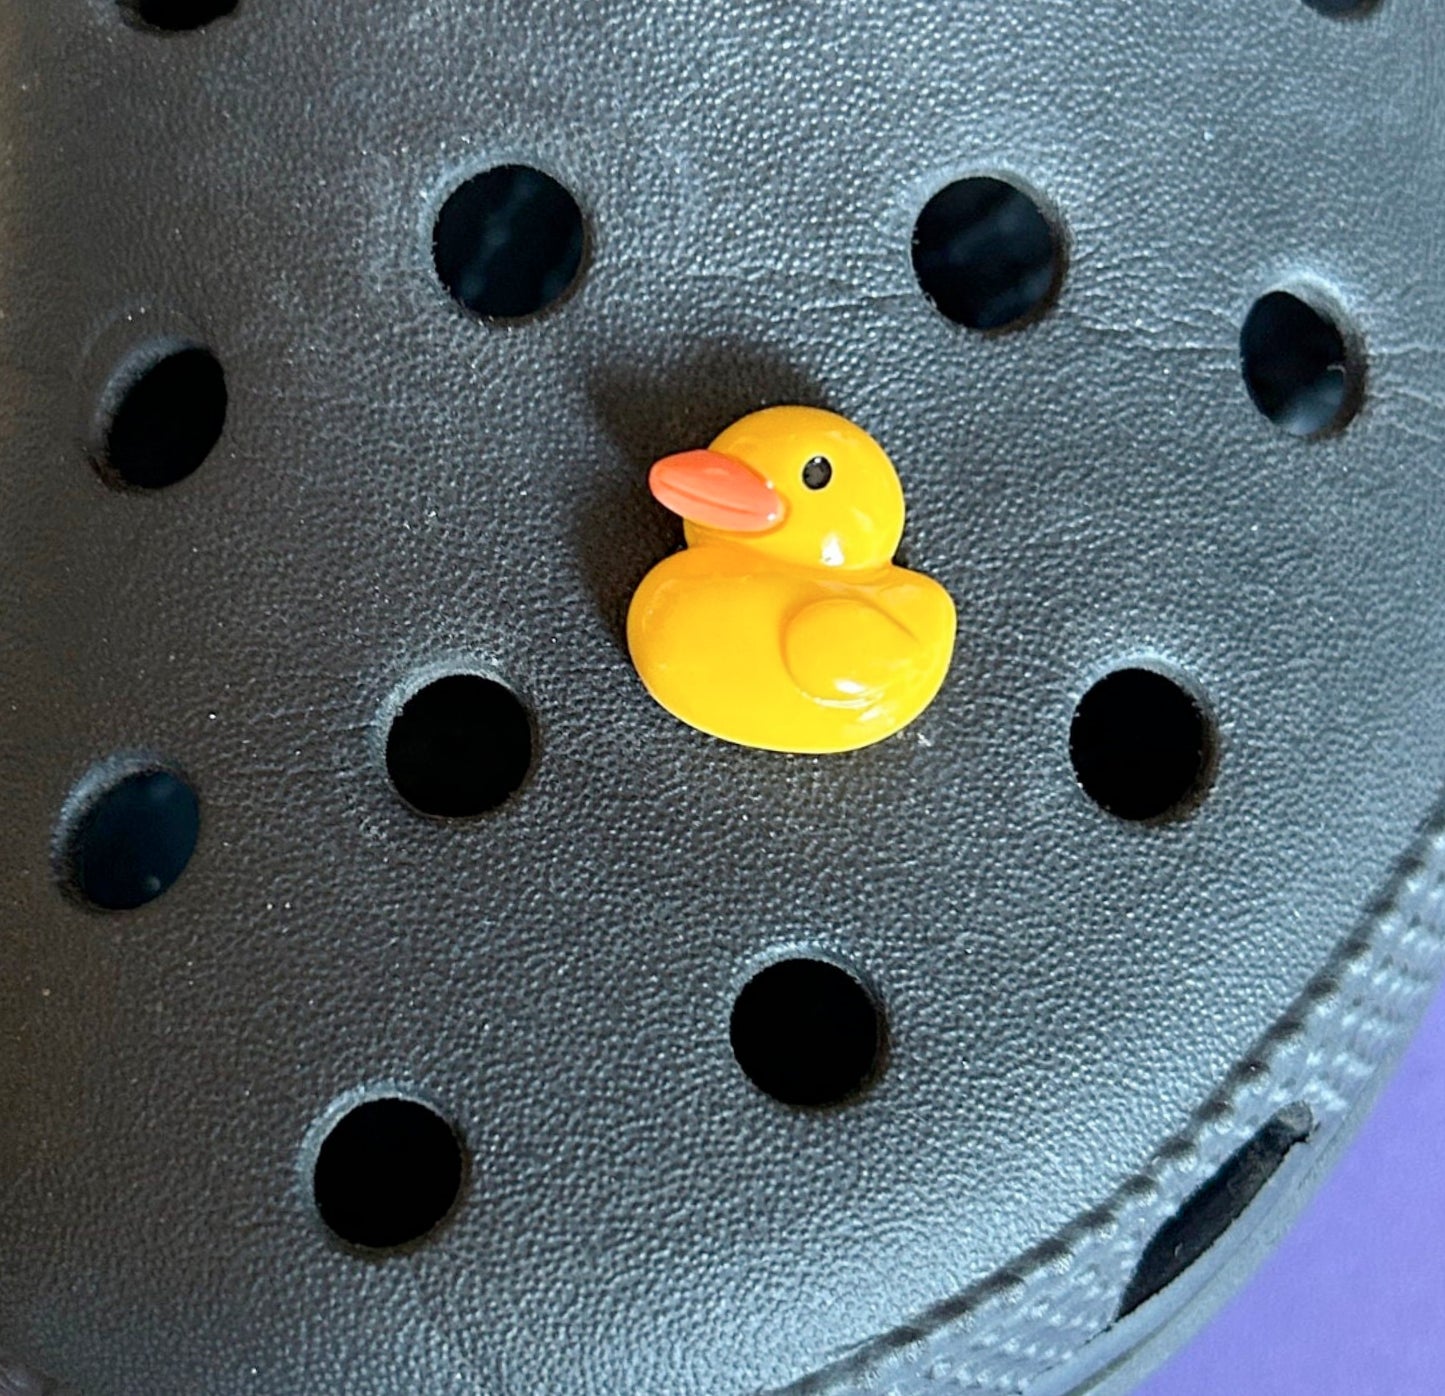 Rubber duck 3D shoe charm. 